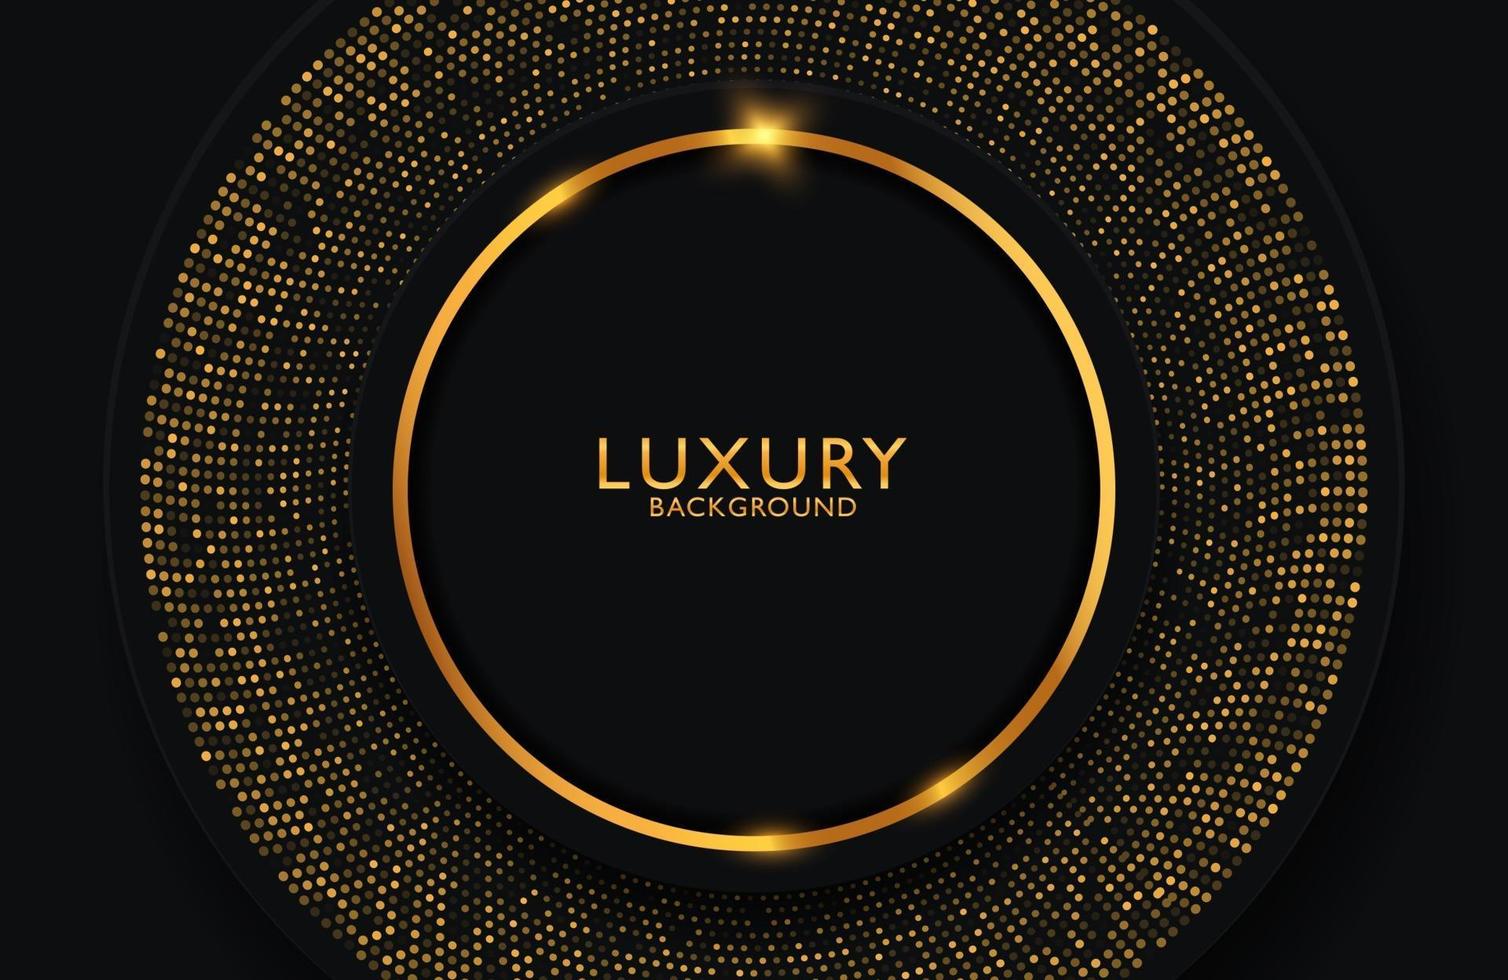 Fondo elegante de lujo con elemento de círculo dorado y partículas de puntos en una superficie oscura. diseño de presentación de negocios vector